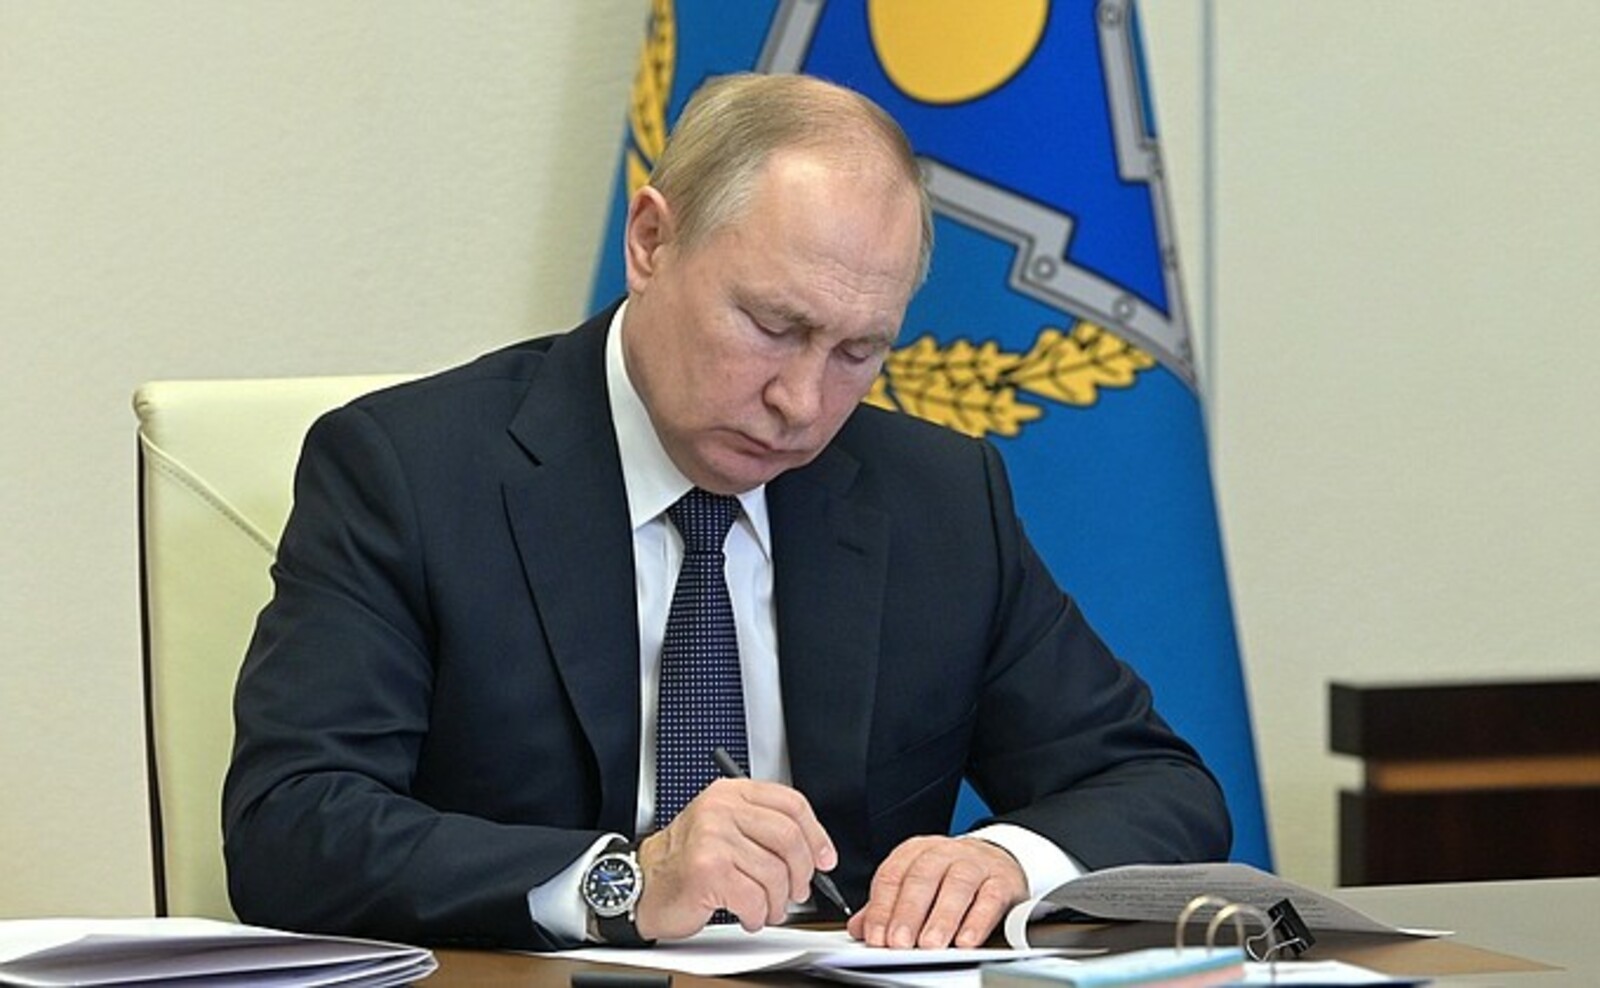 В. Путин принял участие во внеочередной сессии Совета коллективной безопасности ОДКБ (Организации Договора о коллективной безопасности)